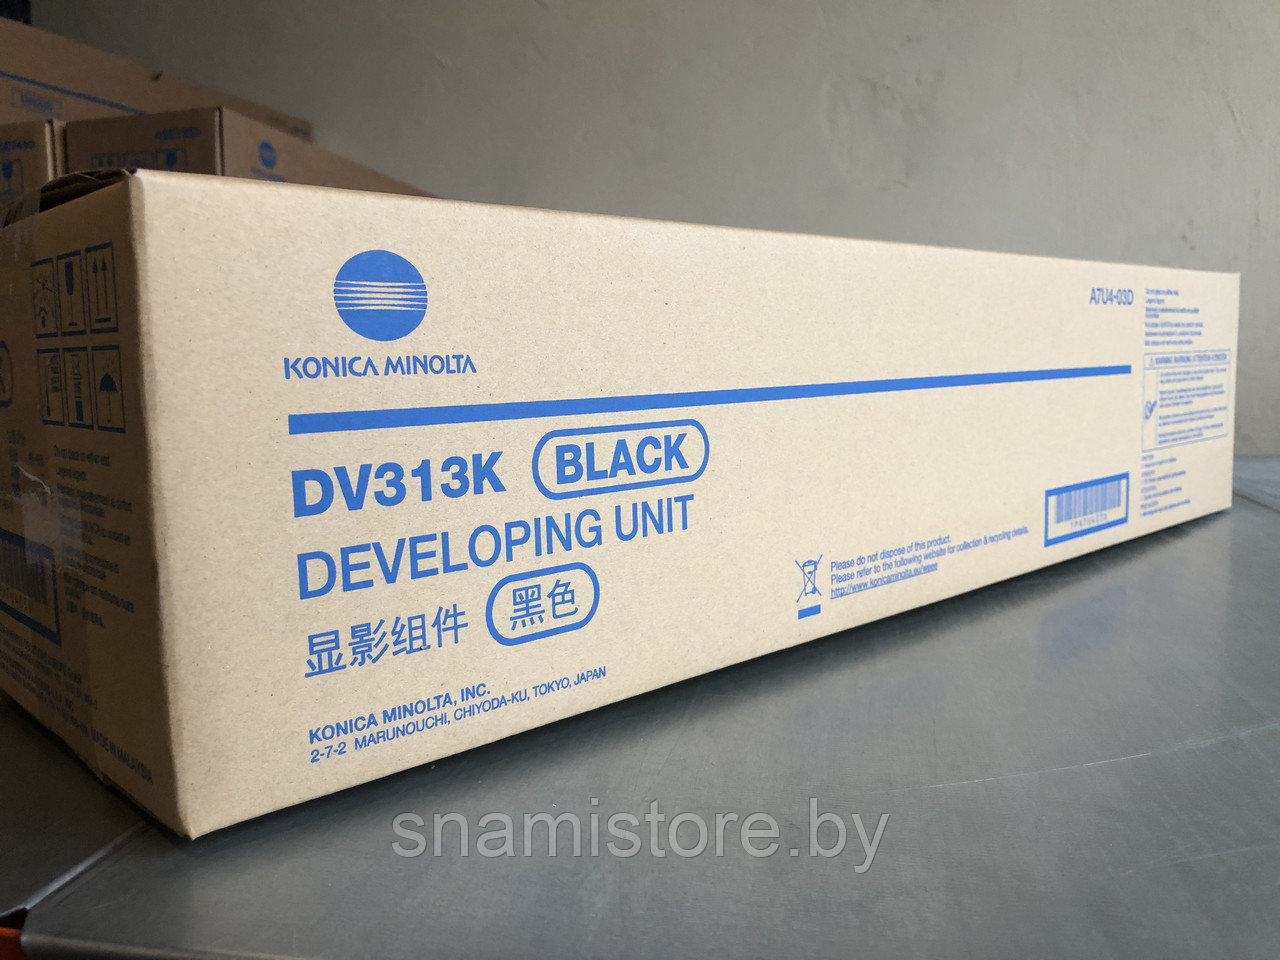 Девелоперный блок Konica Minolta DV-313K